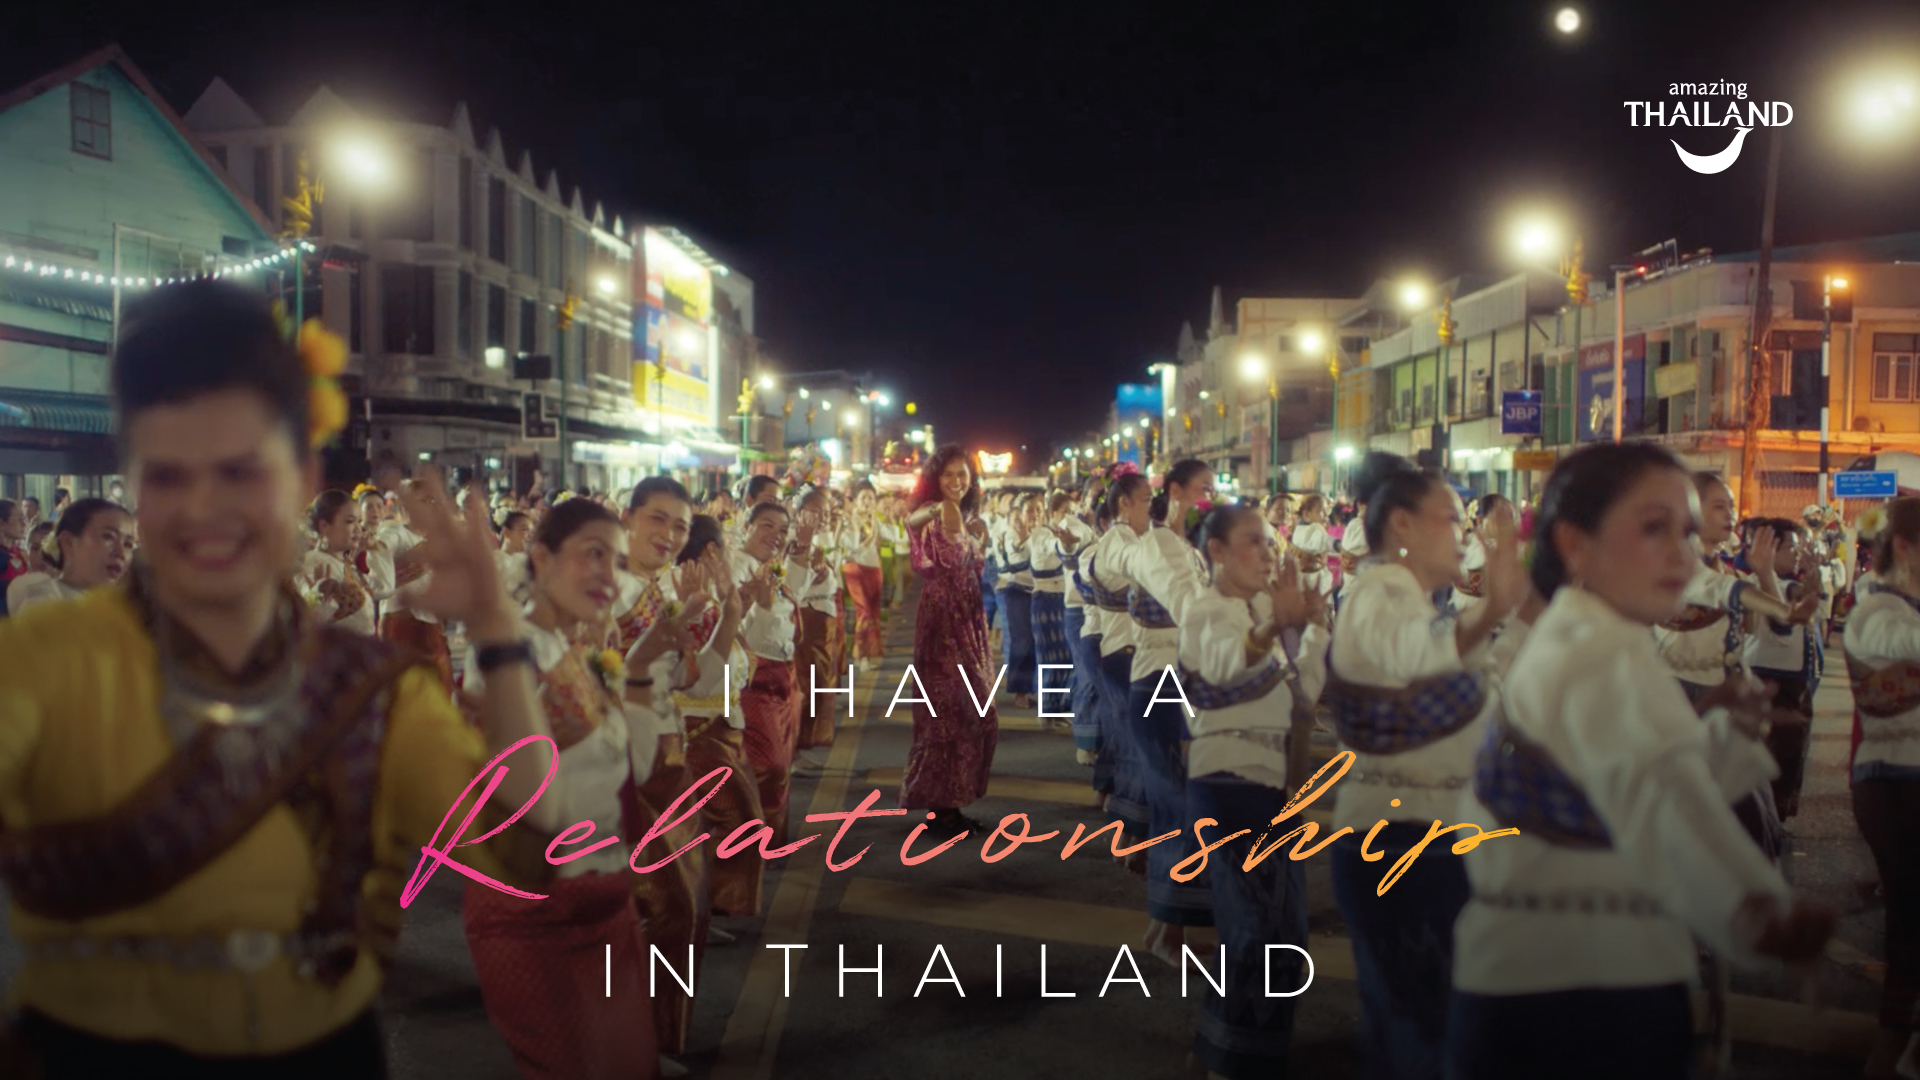 ททท. เปิดตัวภาพยนตร์โฆษณา “Meaningful Relationship” ตอกย้ำความหมายของการเที่ยวไทยที่เป็นมากกว่าประสบการณ์